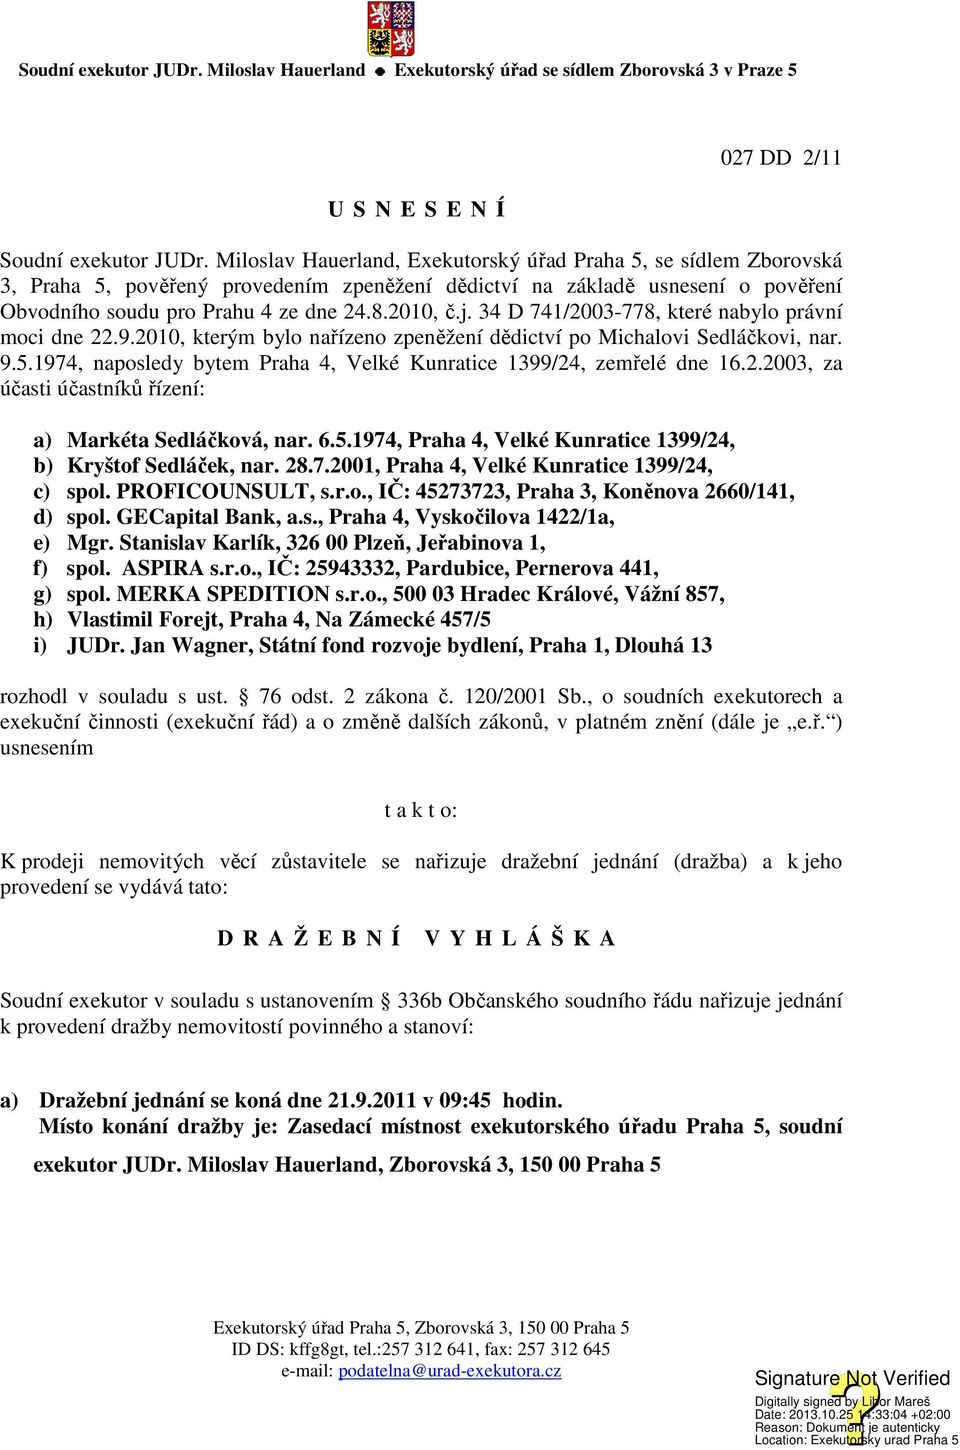 34 D 741/2003-778, které nabylo právní moci dne 22.9.2010, kterým bylo nařízeno zpeněžení dědictví po Michalovi Sedláčkovi, nar. 9.5.